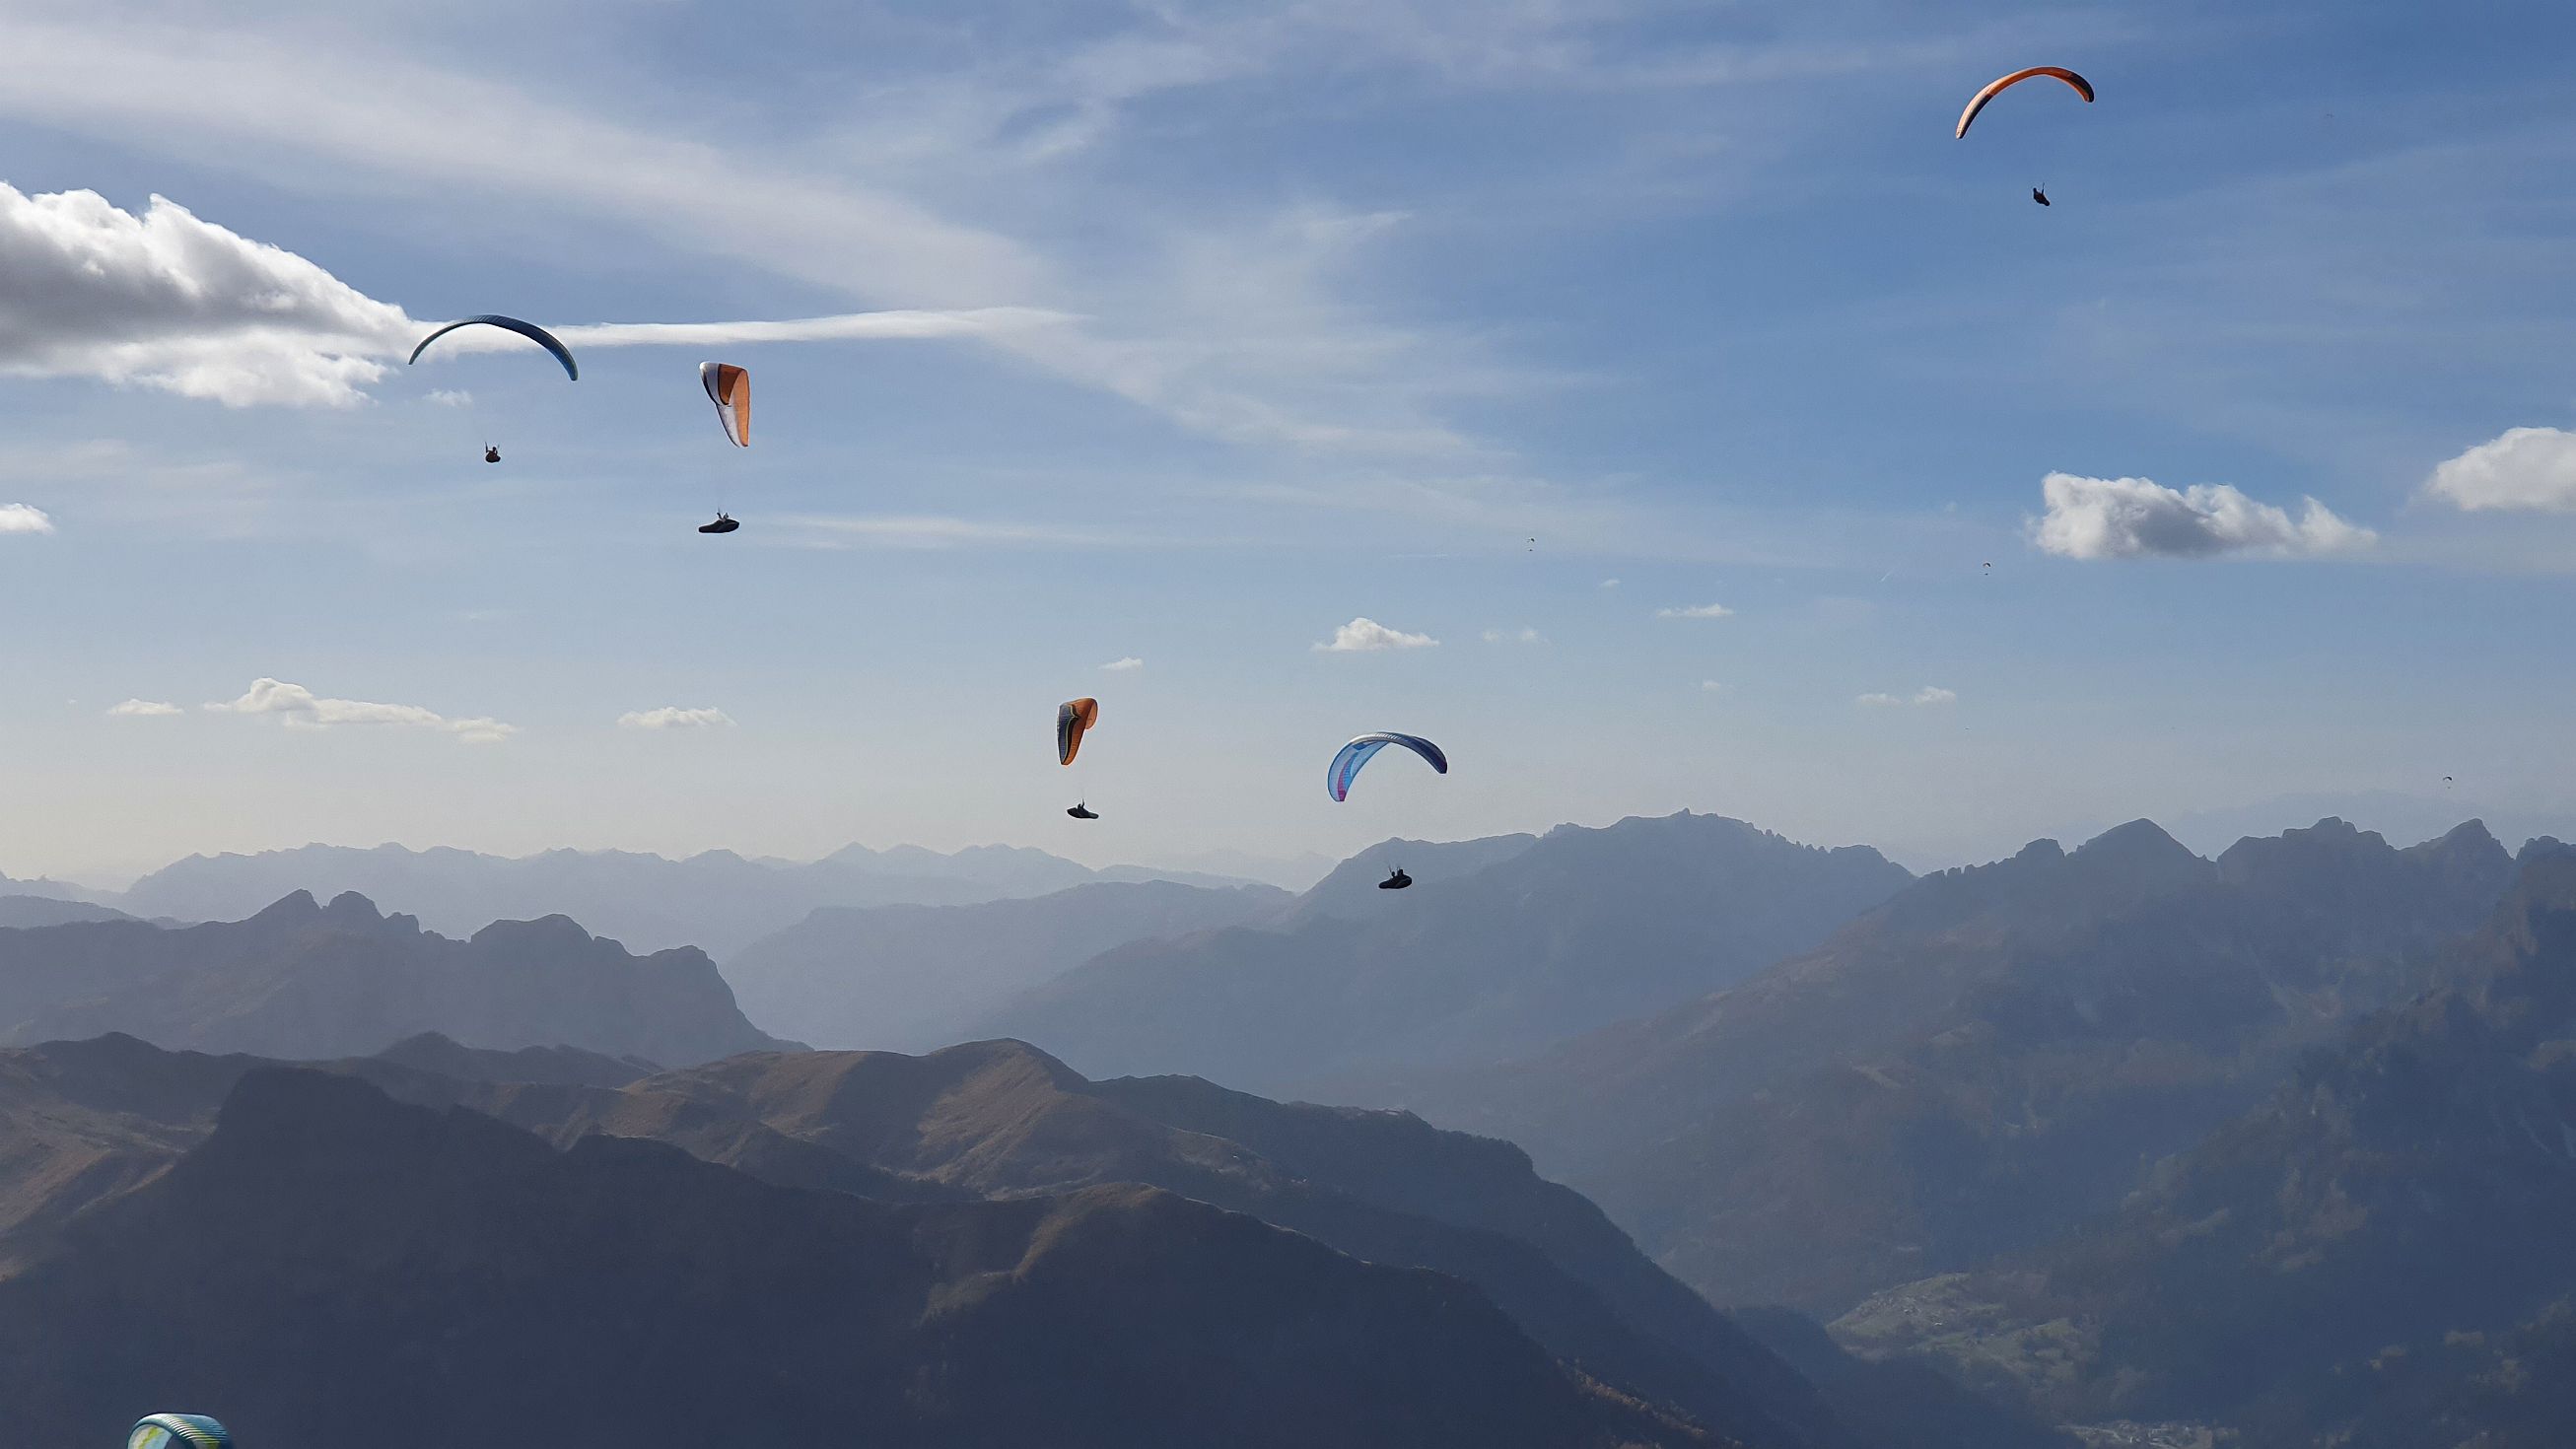 416-dag-13-Piz-Boe-66.jpg - Kijken naar paragliders op Sass Pordoi, in alle stilte.